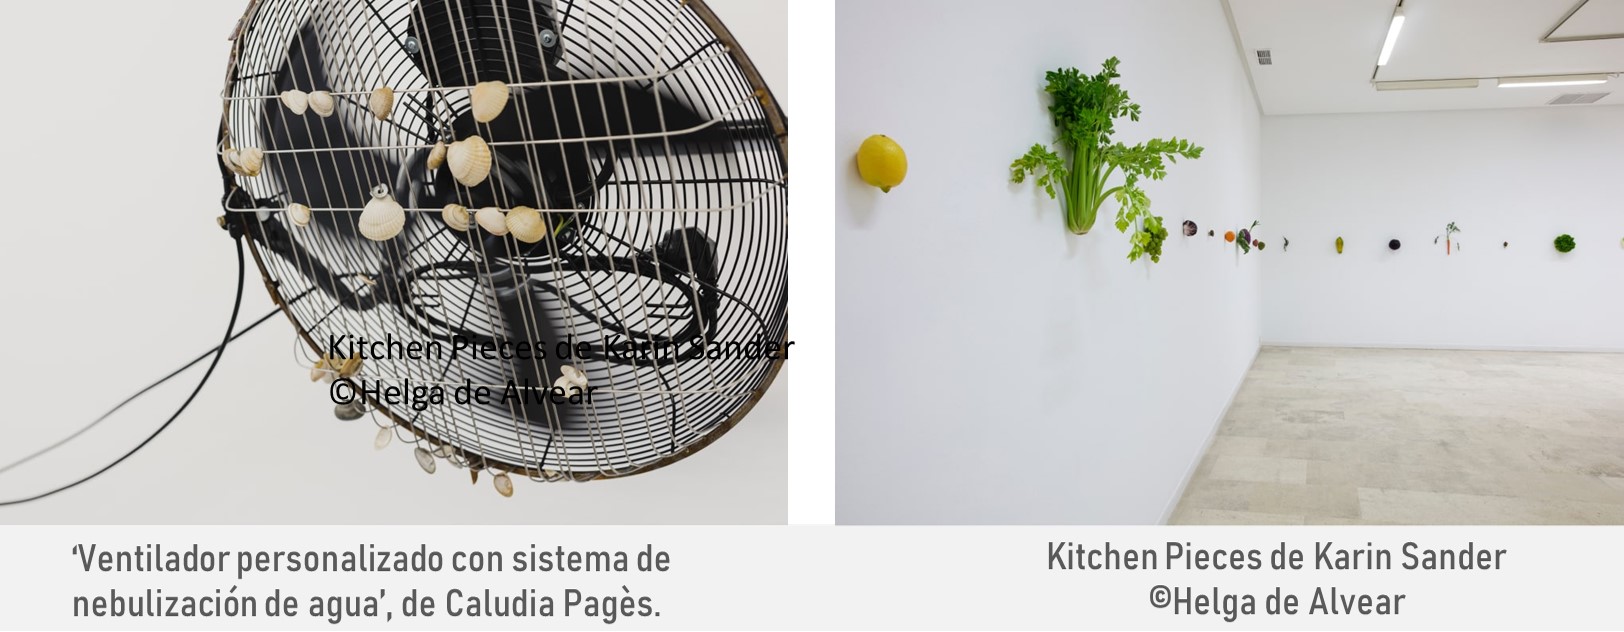 ‘Ventilador personalizado con sistema de nebulización de agua’, de Caludia Pagès. y Kitchen Pieces de Karin Sander